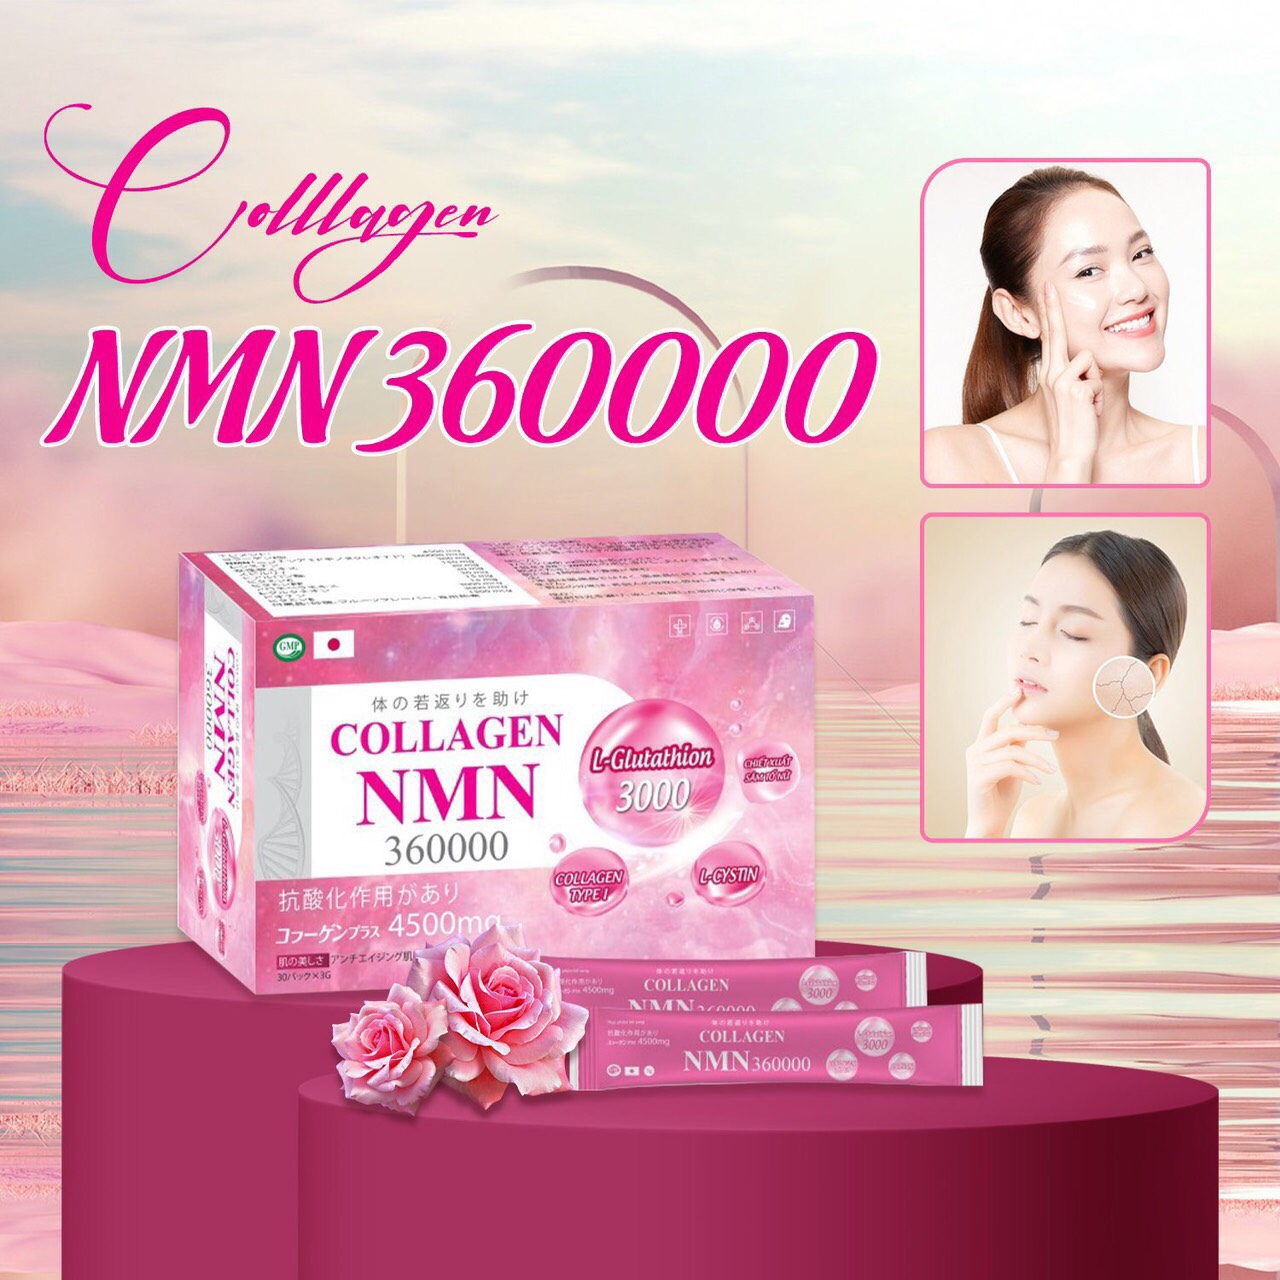 Collagen NMN 360000 tăng cường độ ẩm, tăng tính đàn hồi và chống lão hóa